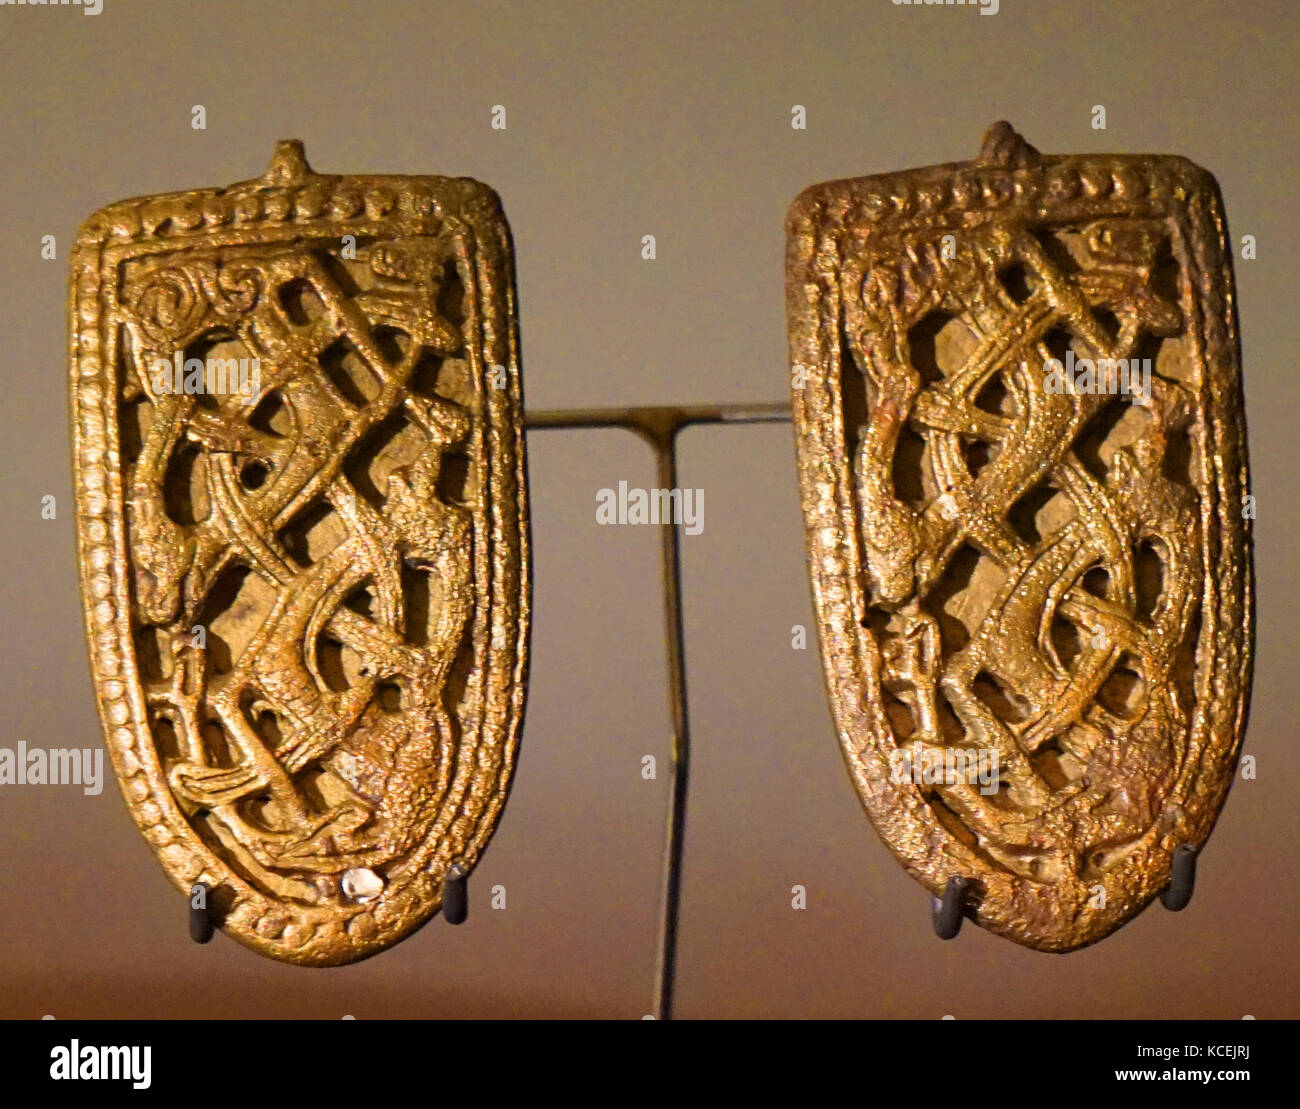 Broschen des Isländischen Frauen, ähnlich verziert, die aus der Wikingerzeit in Skandinavien. Die häufigsten Funde sind Frauen Broschen, die benutzt wurden, um die Über-tuniken an den Schultern zu befestigen. 9. Jahrhundert. Stockfoto